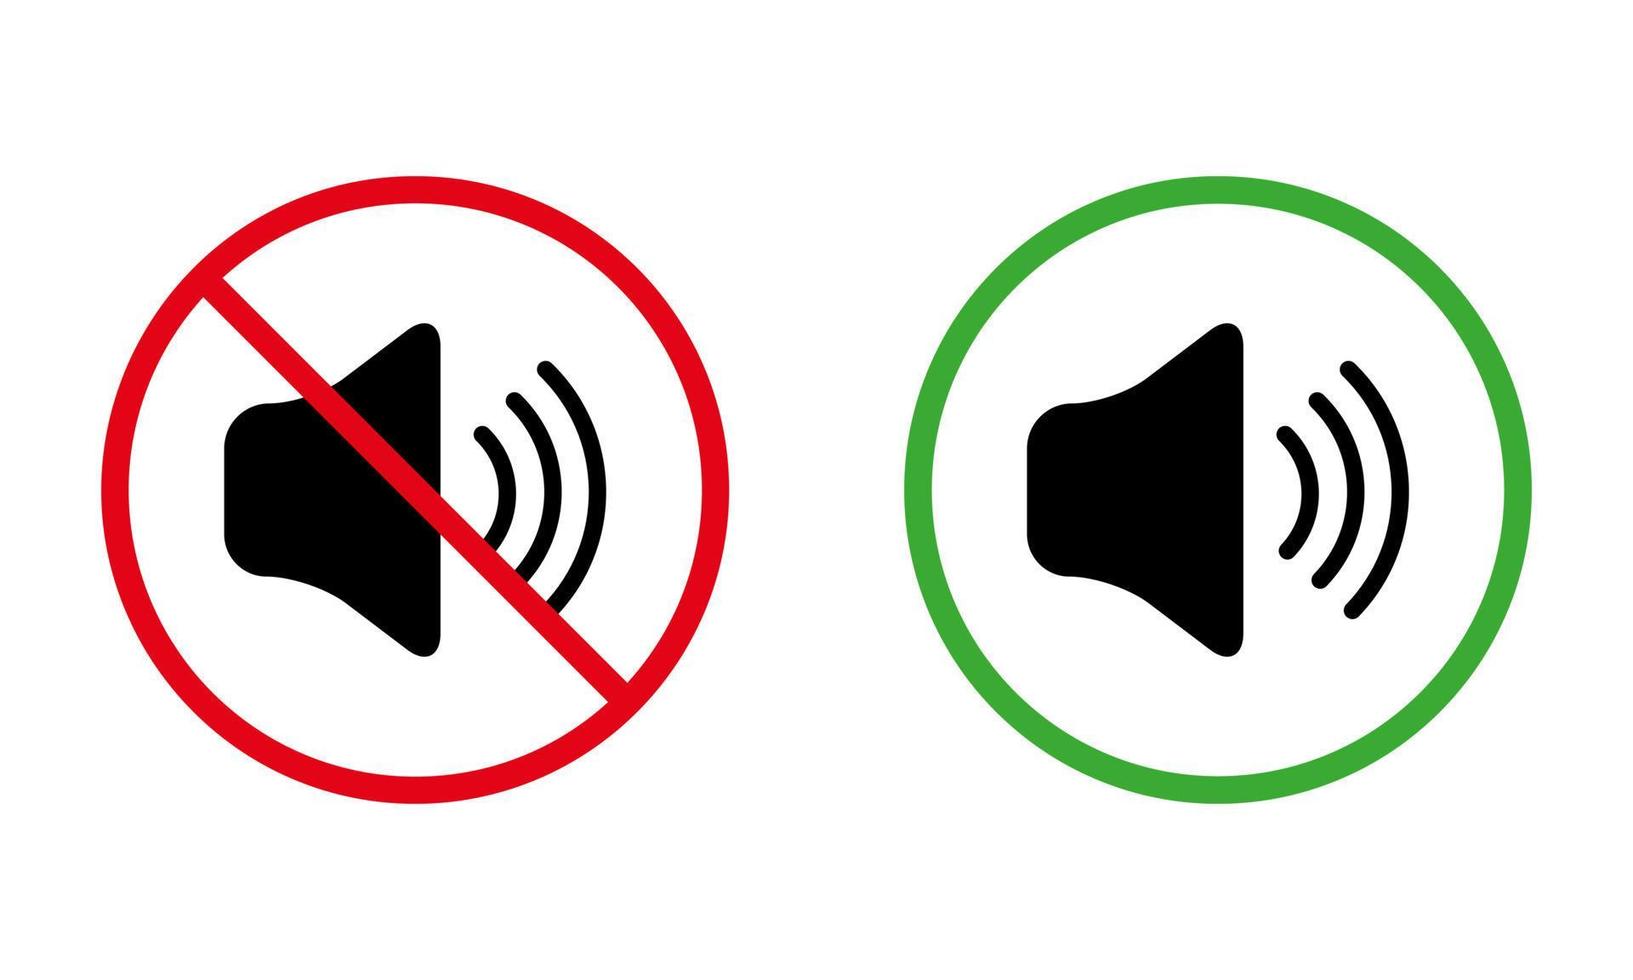 ljud av tyst läge svart siluett ikonuppsättning. förbud buller anmälningszon röd förbjuden rund skylt. högt ljud tillåtet område grön symbol. varning håll tyst. isolerade vektor illustration.